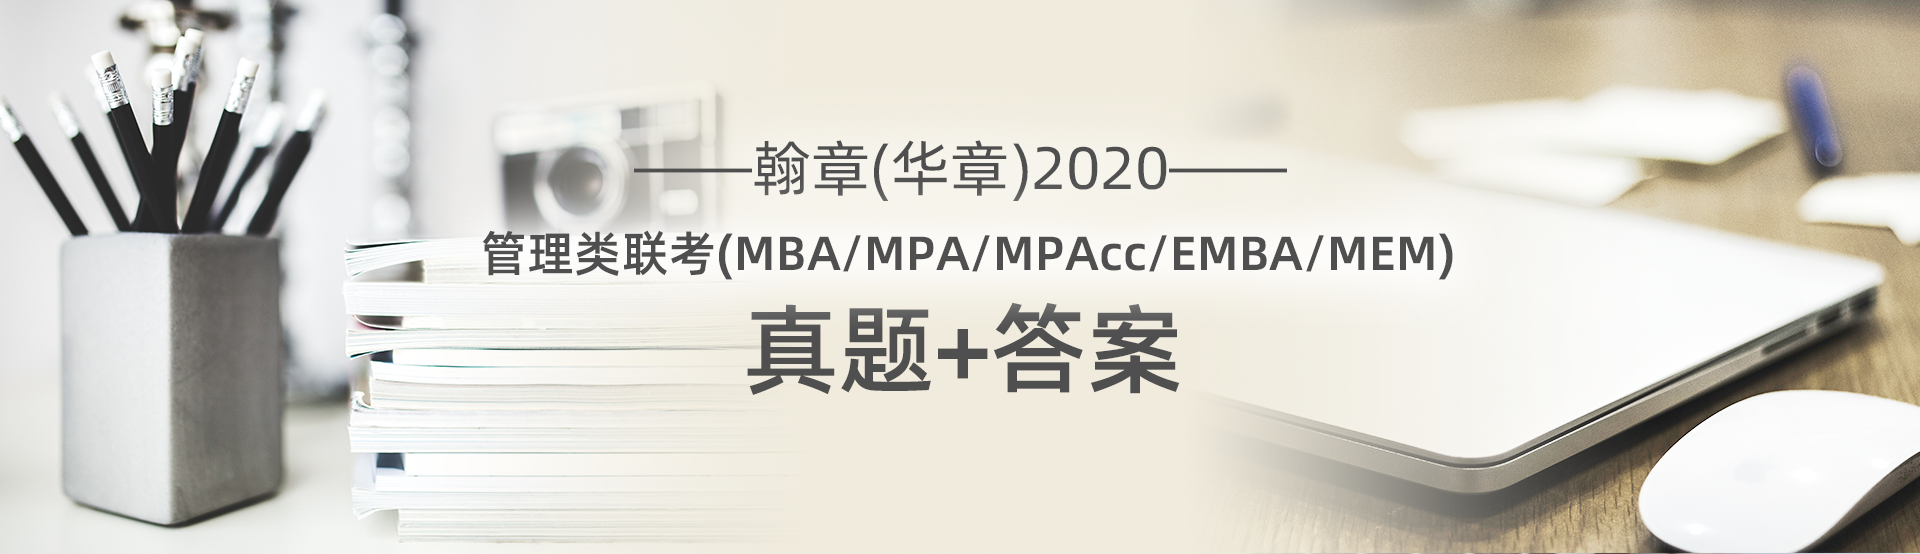 围观 2020MBA联考真题及答案解析在线直播